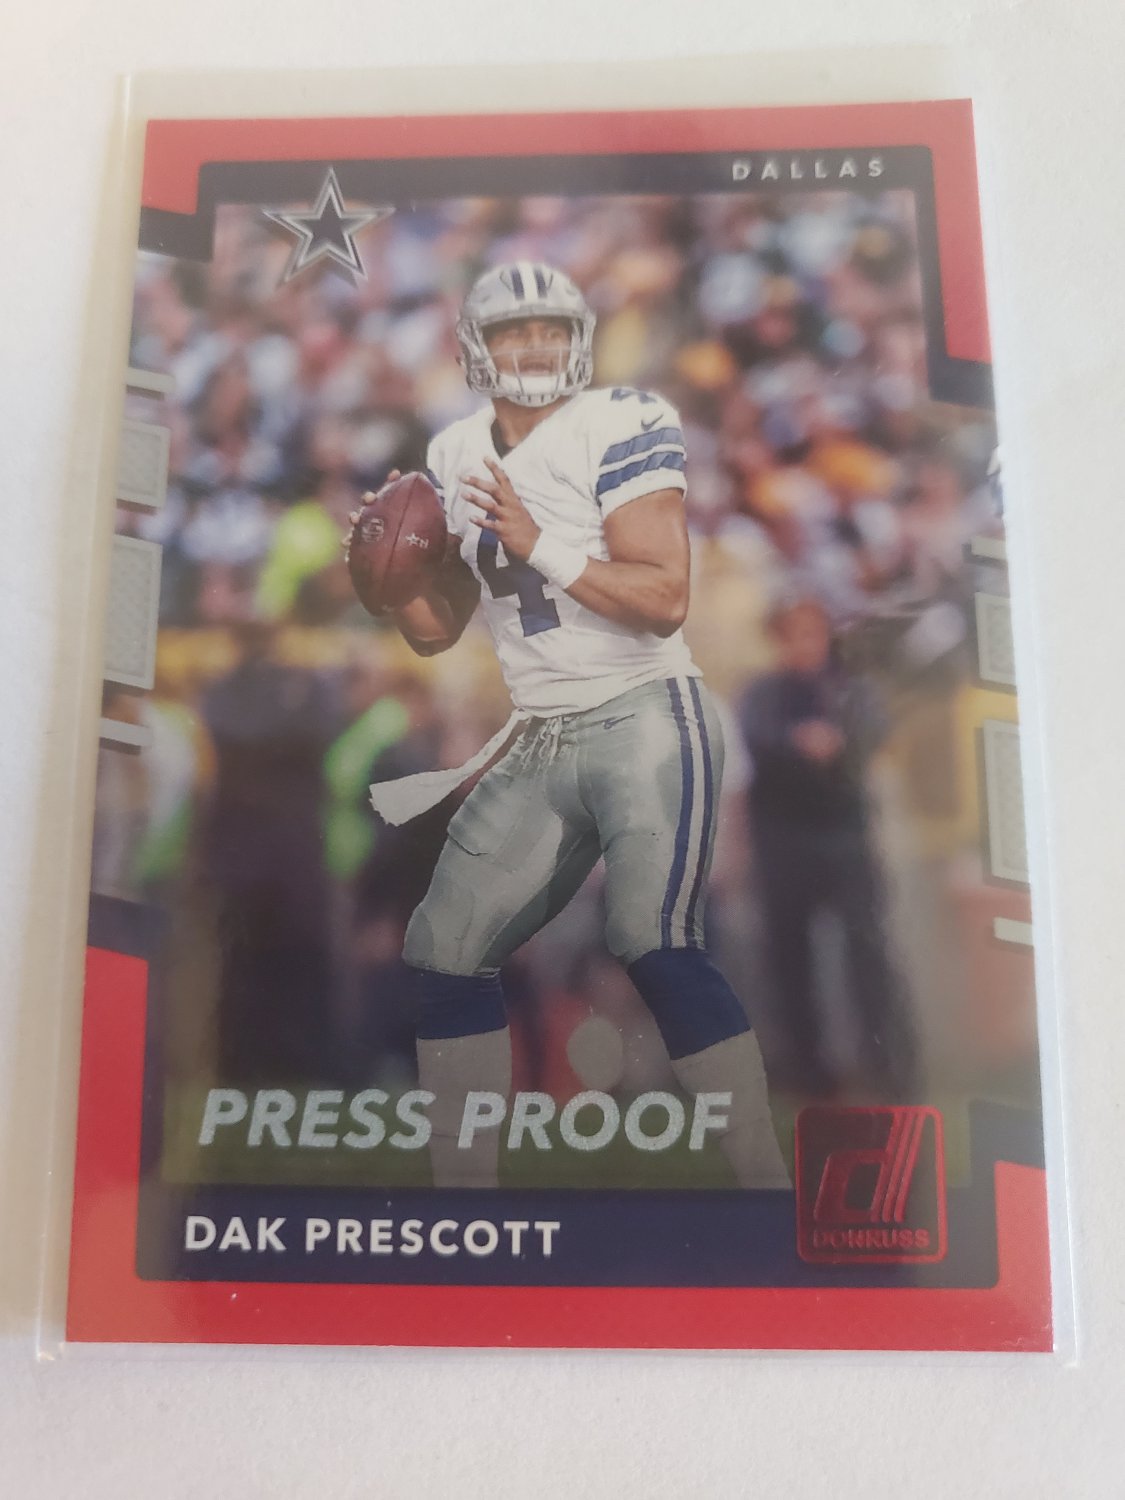 Dak Prescott 2017 Donruss Pess Proof Red Insert Card